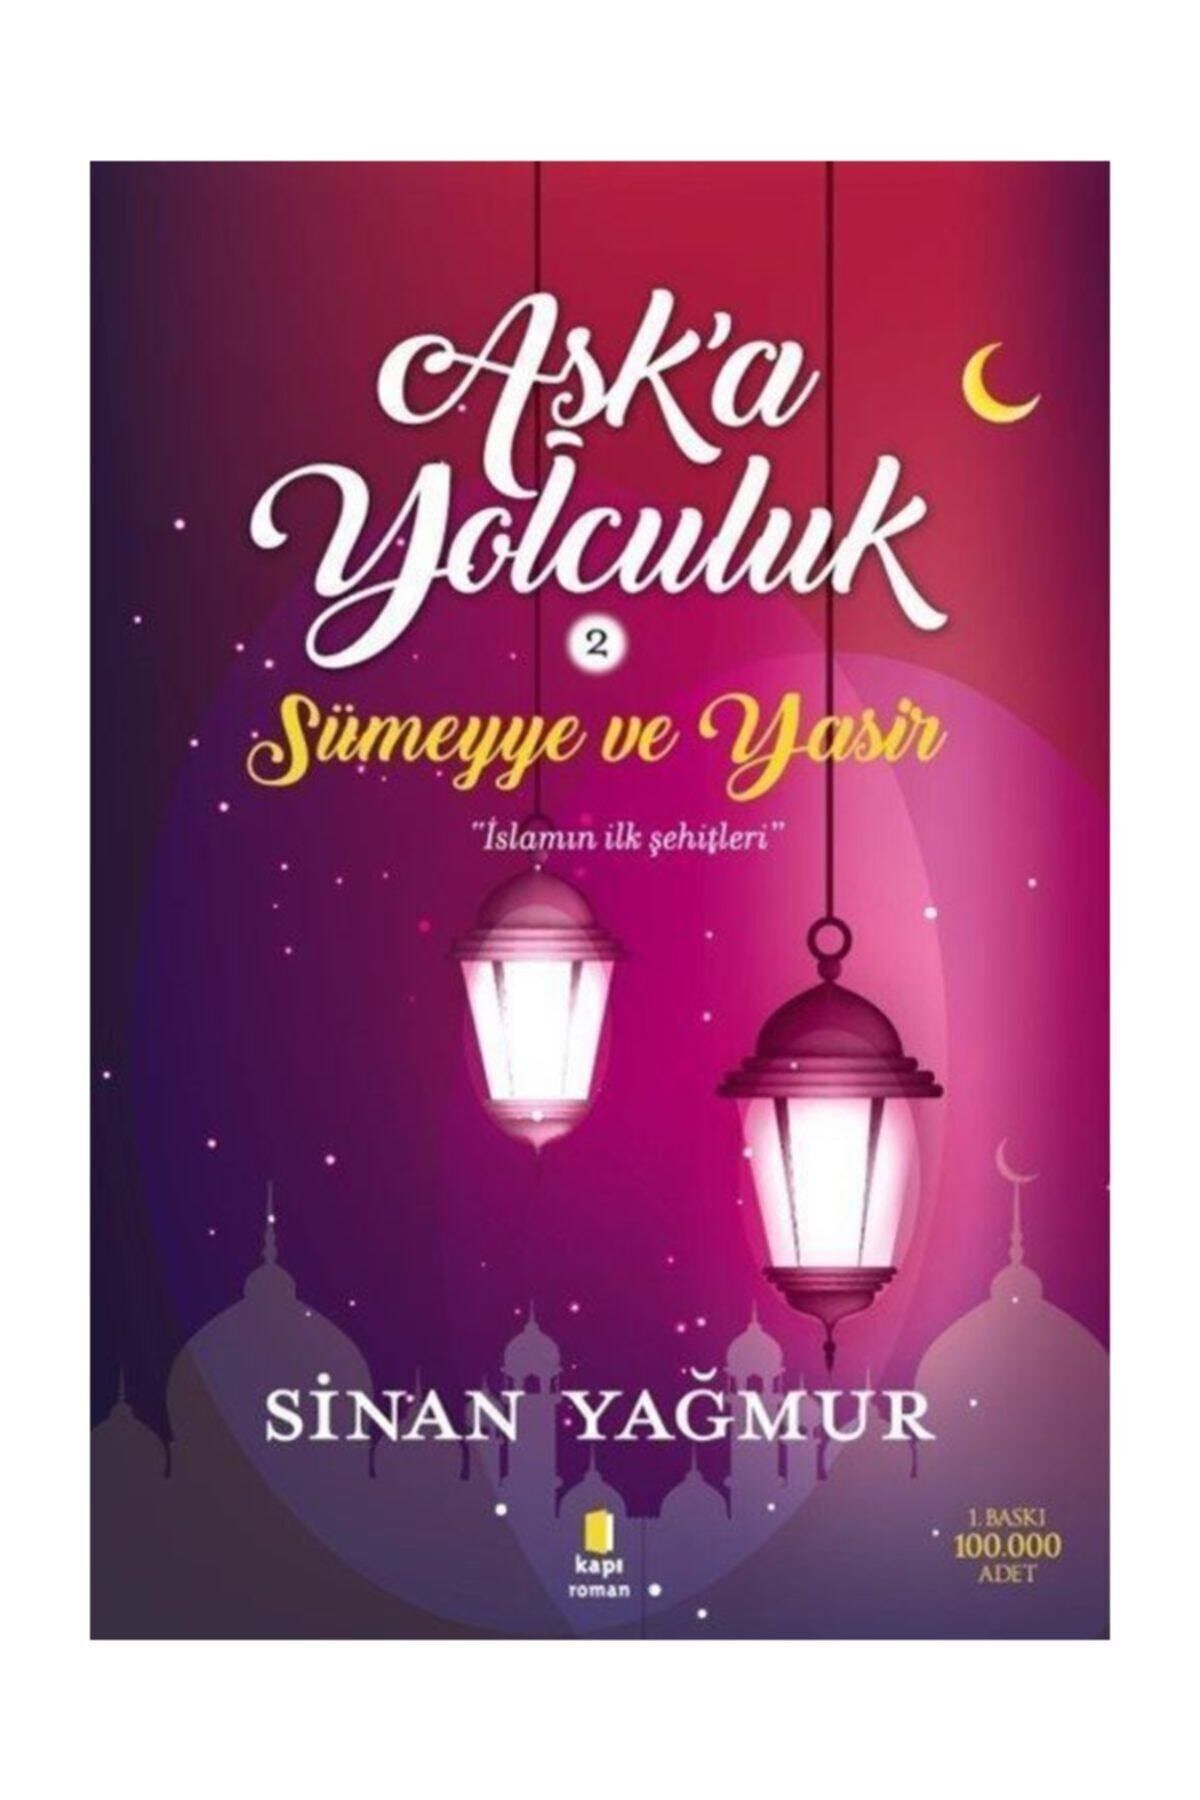 Kapı Yayınları Aşk'a Yolculuk 2 / Sümeyye ve Yasir